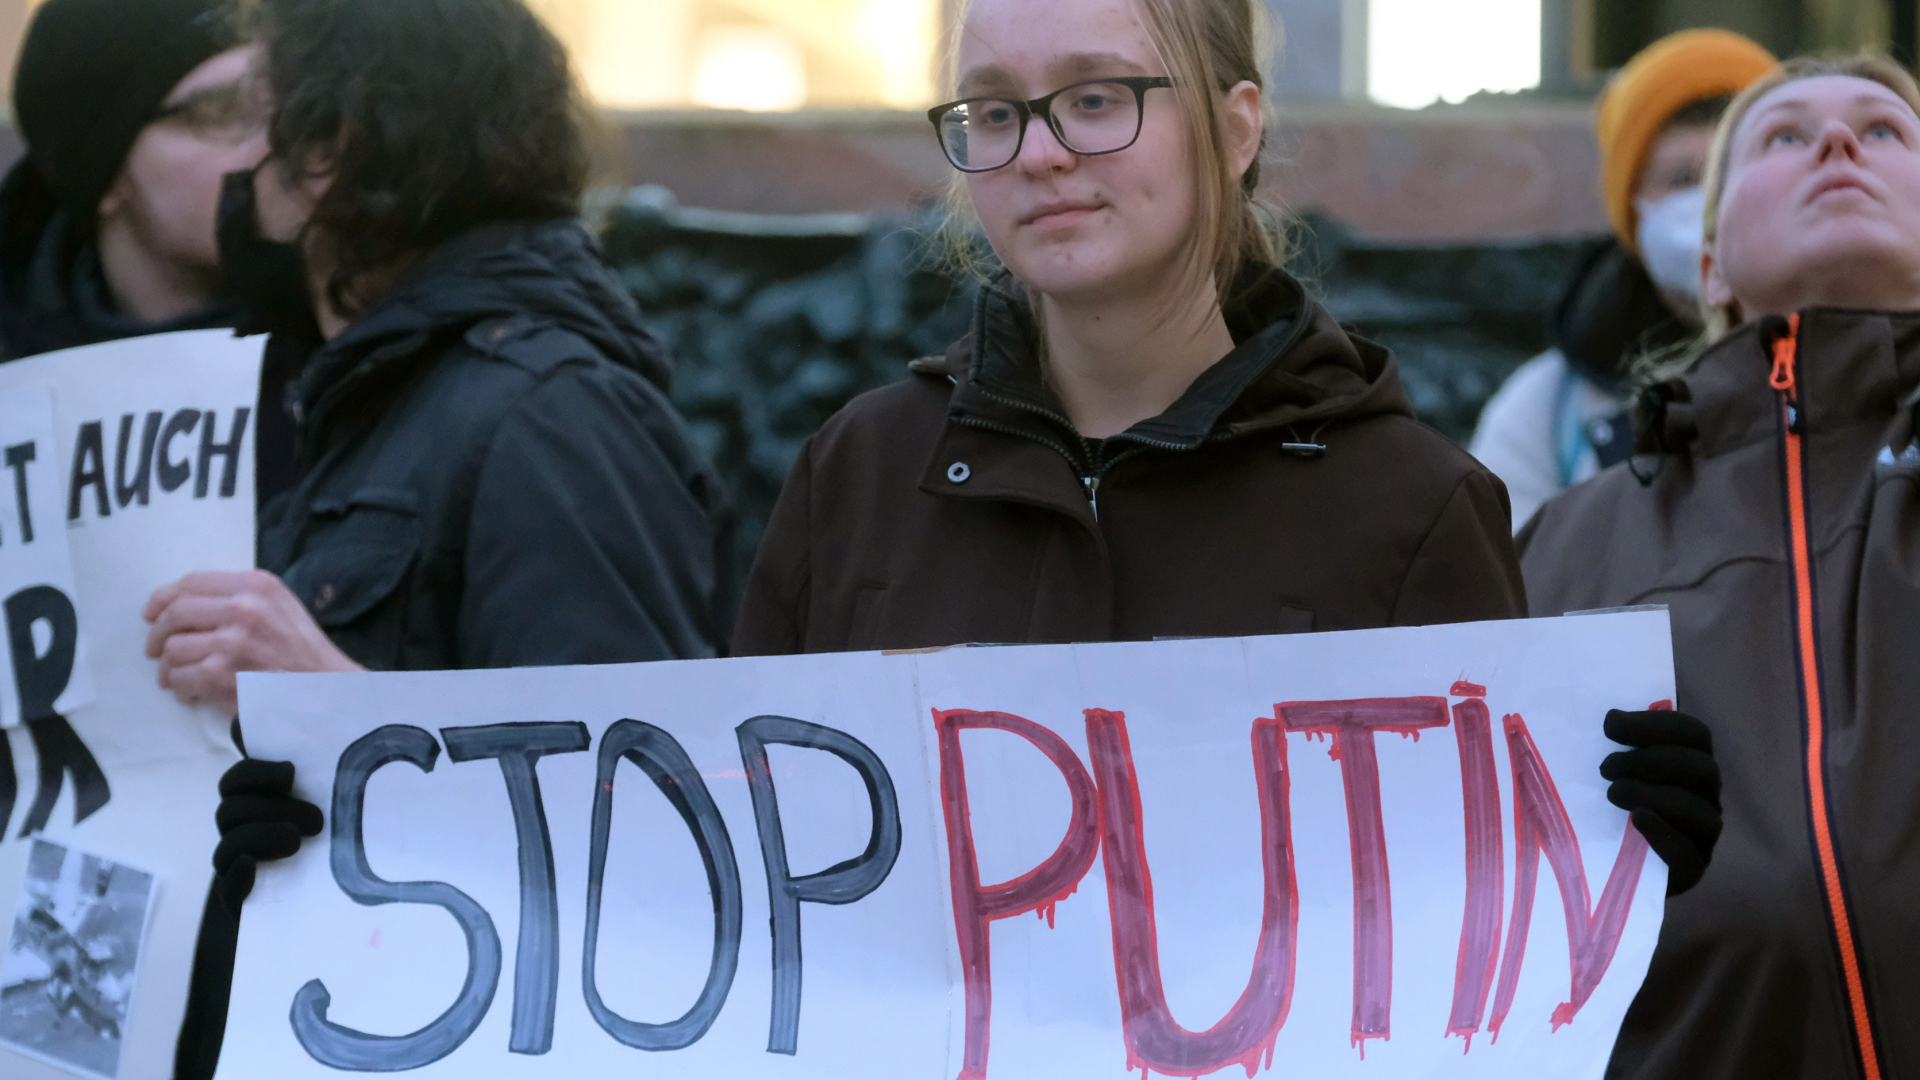  Sachsen, Leipzig: Eine Frau hält bei einer Kundgebung auf dem Marktplatz ein Schild mit der Aufschrift ·Stop Putin· | dpa